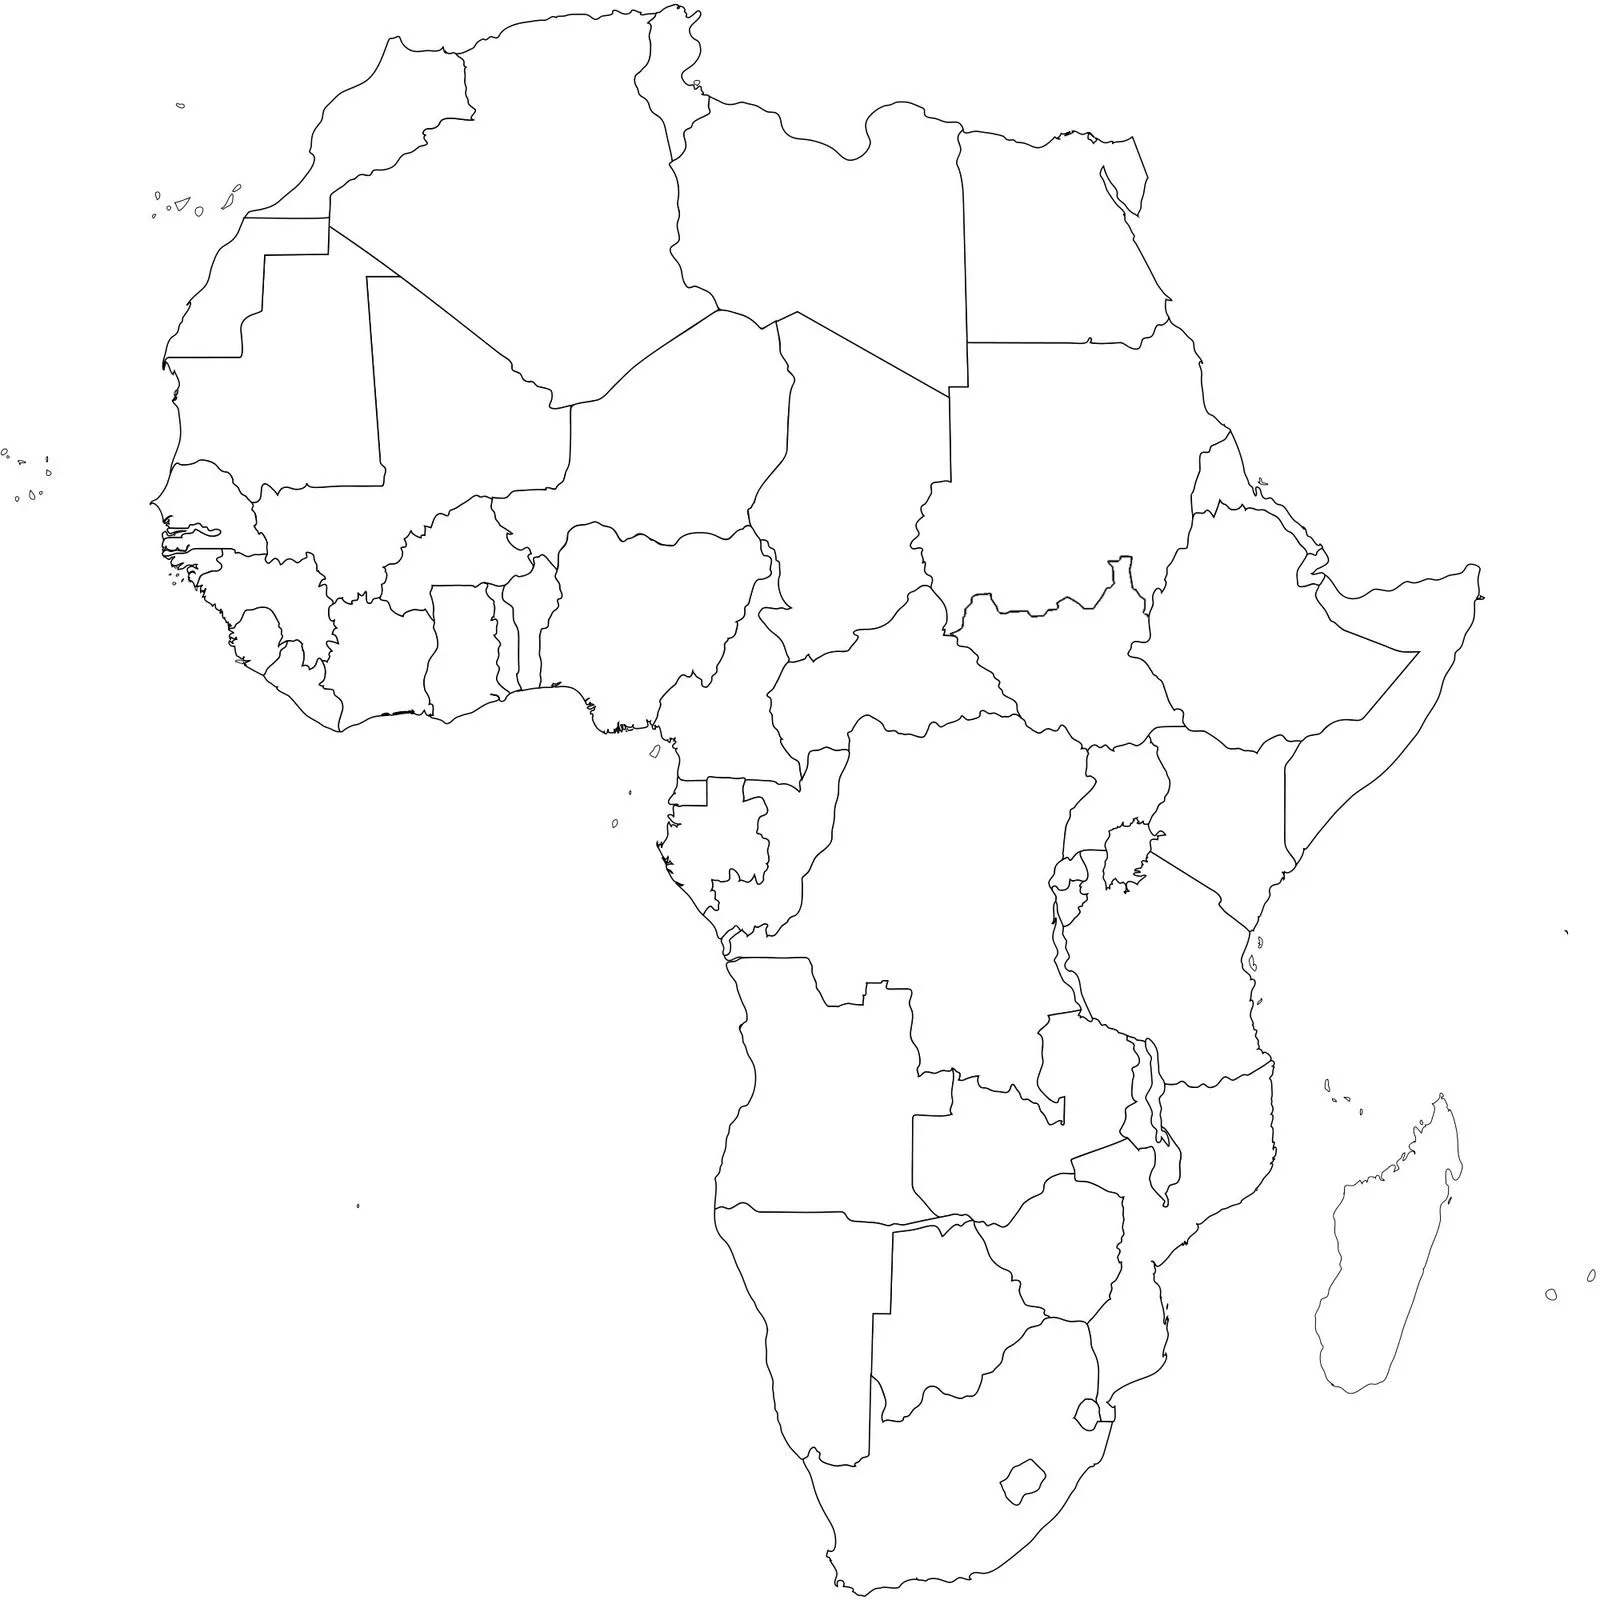 Los mapas de África más útiles, interesantes y curiosos ...